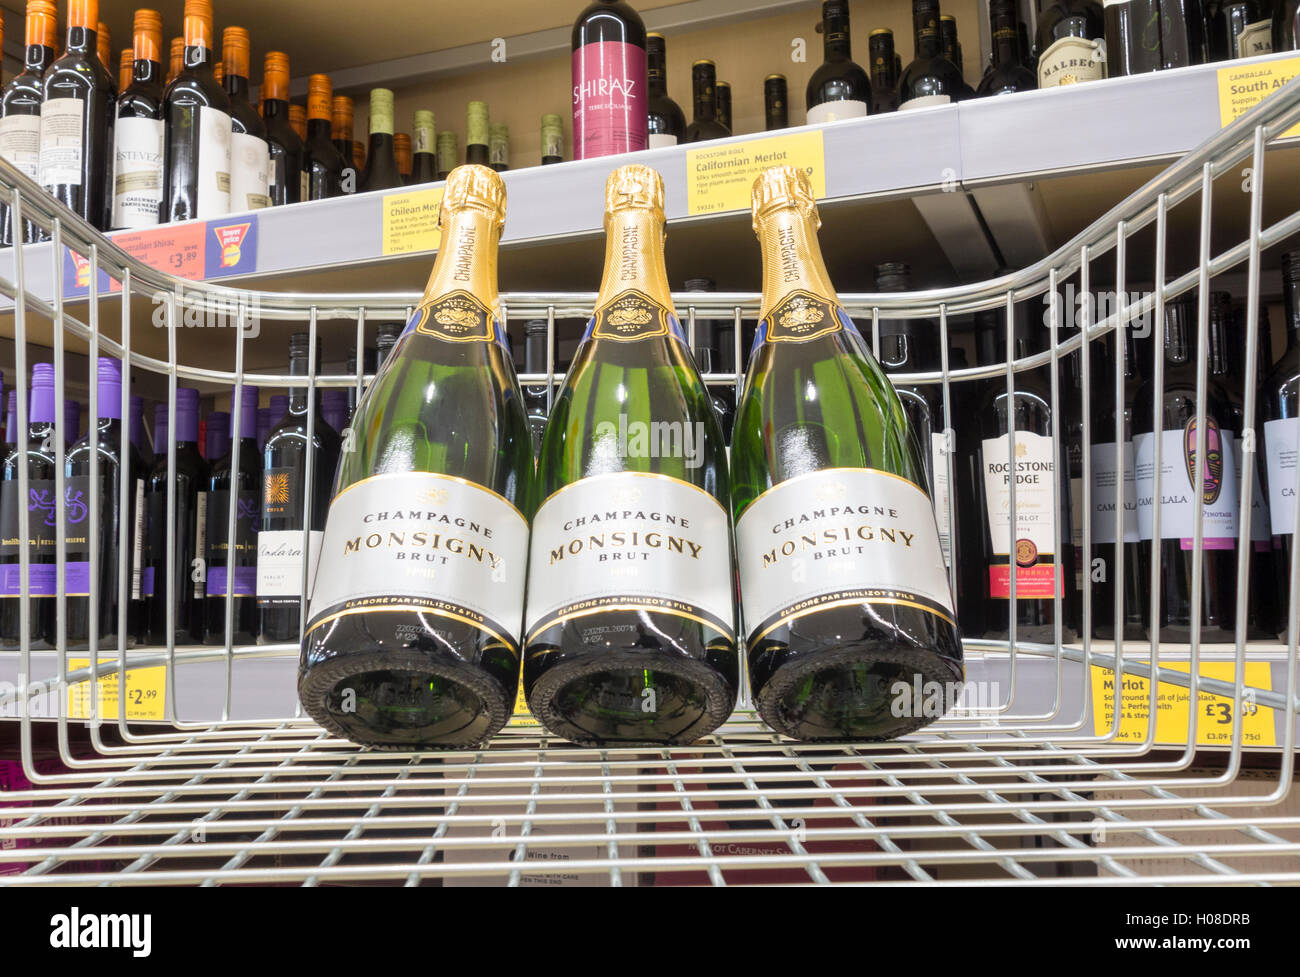 Bottiglie di Monsigny brut champagne nel carrello della spesa nel supermercato Aldi. Regno Unito Foto Stock